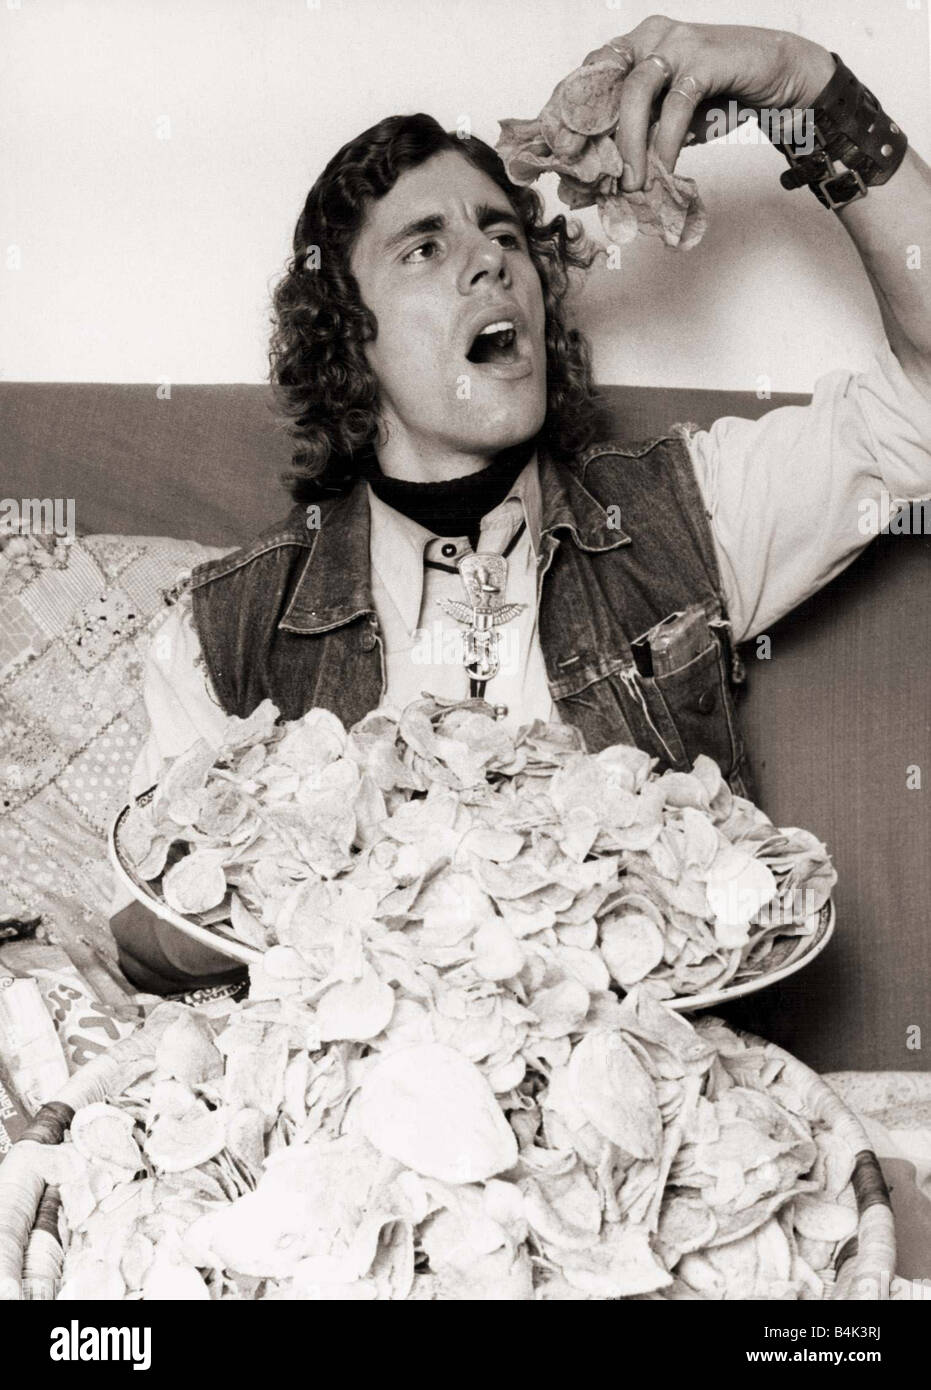 Paul Smith 28 settembre 1979 egli prenderà su un qualsiasi corpo in un croccante di mangiare concorso e garantite che egli ll win Paolo da St Leonards onu Sussex pensa nulla di dowining 20 pacchetti in una volta sola Foto Stock